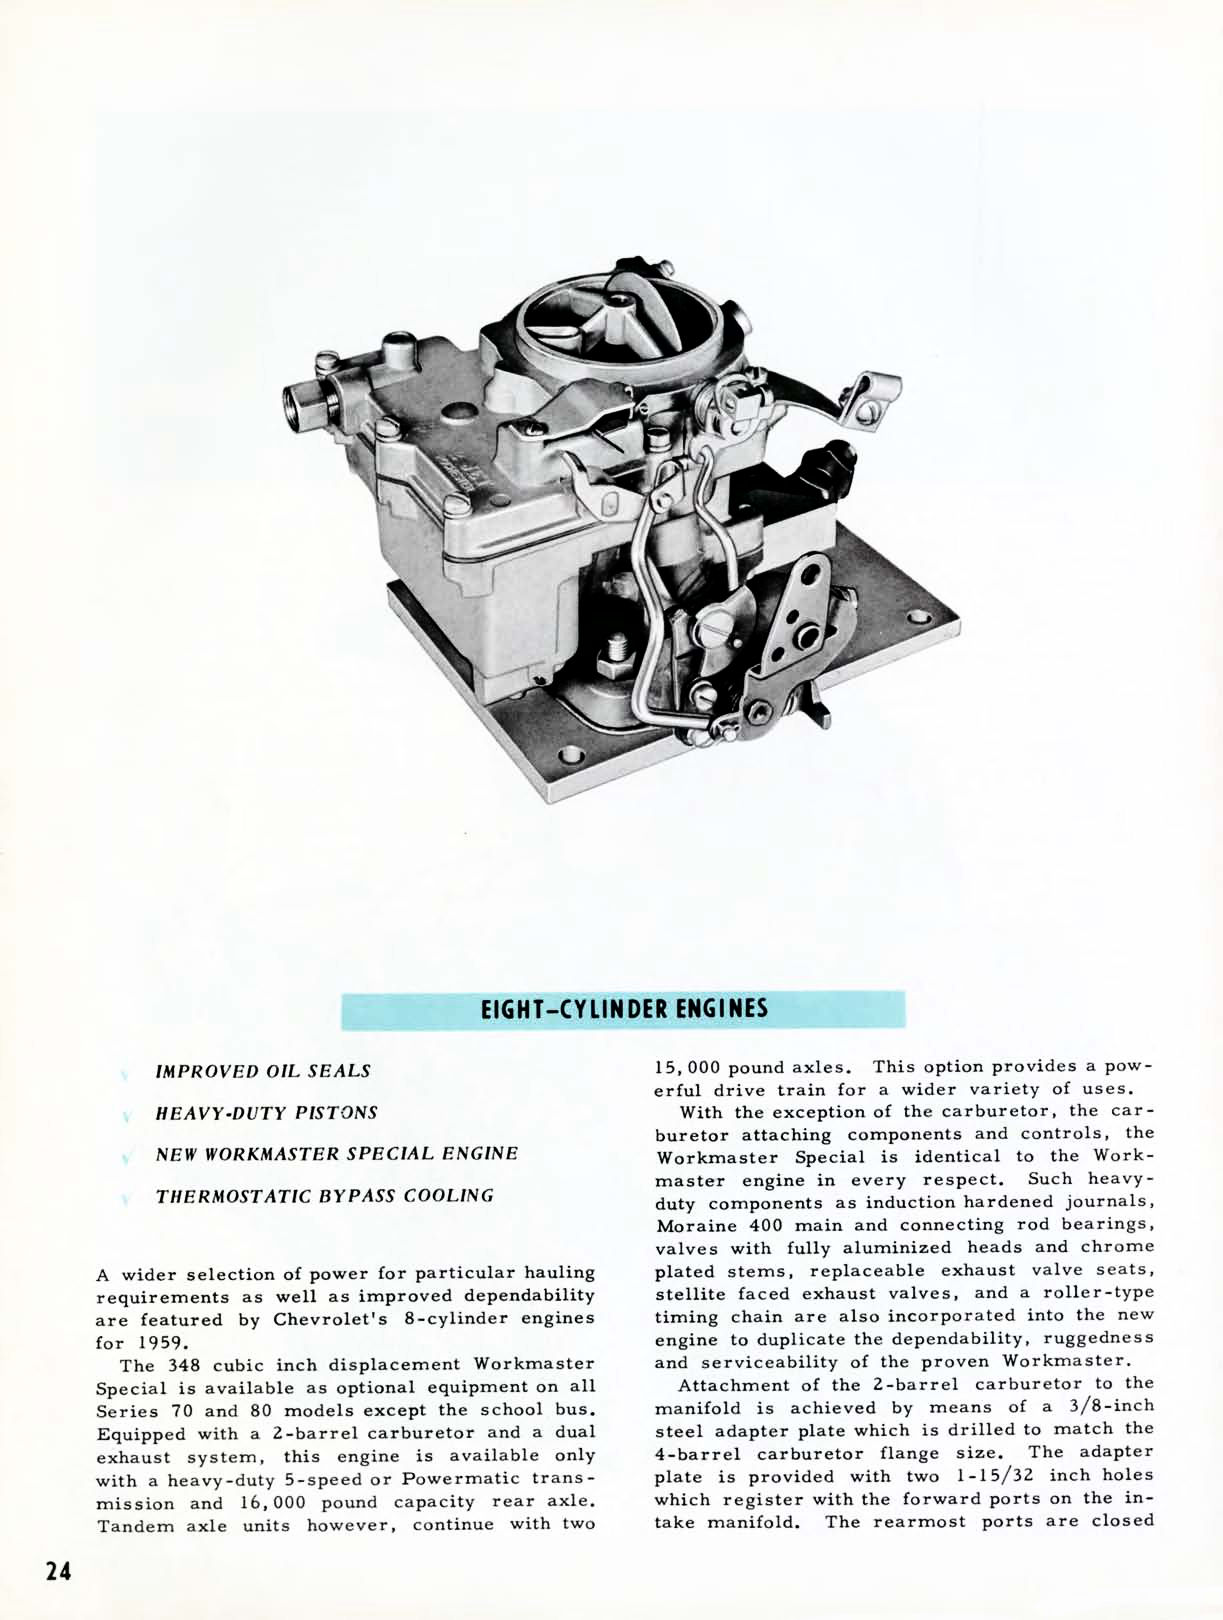 1959 Chevrolet Truck Engineering Features-24